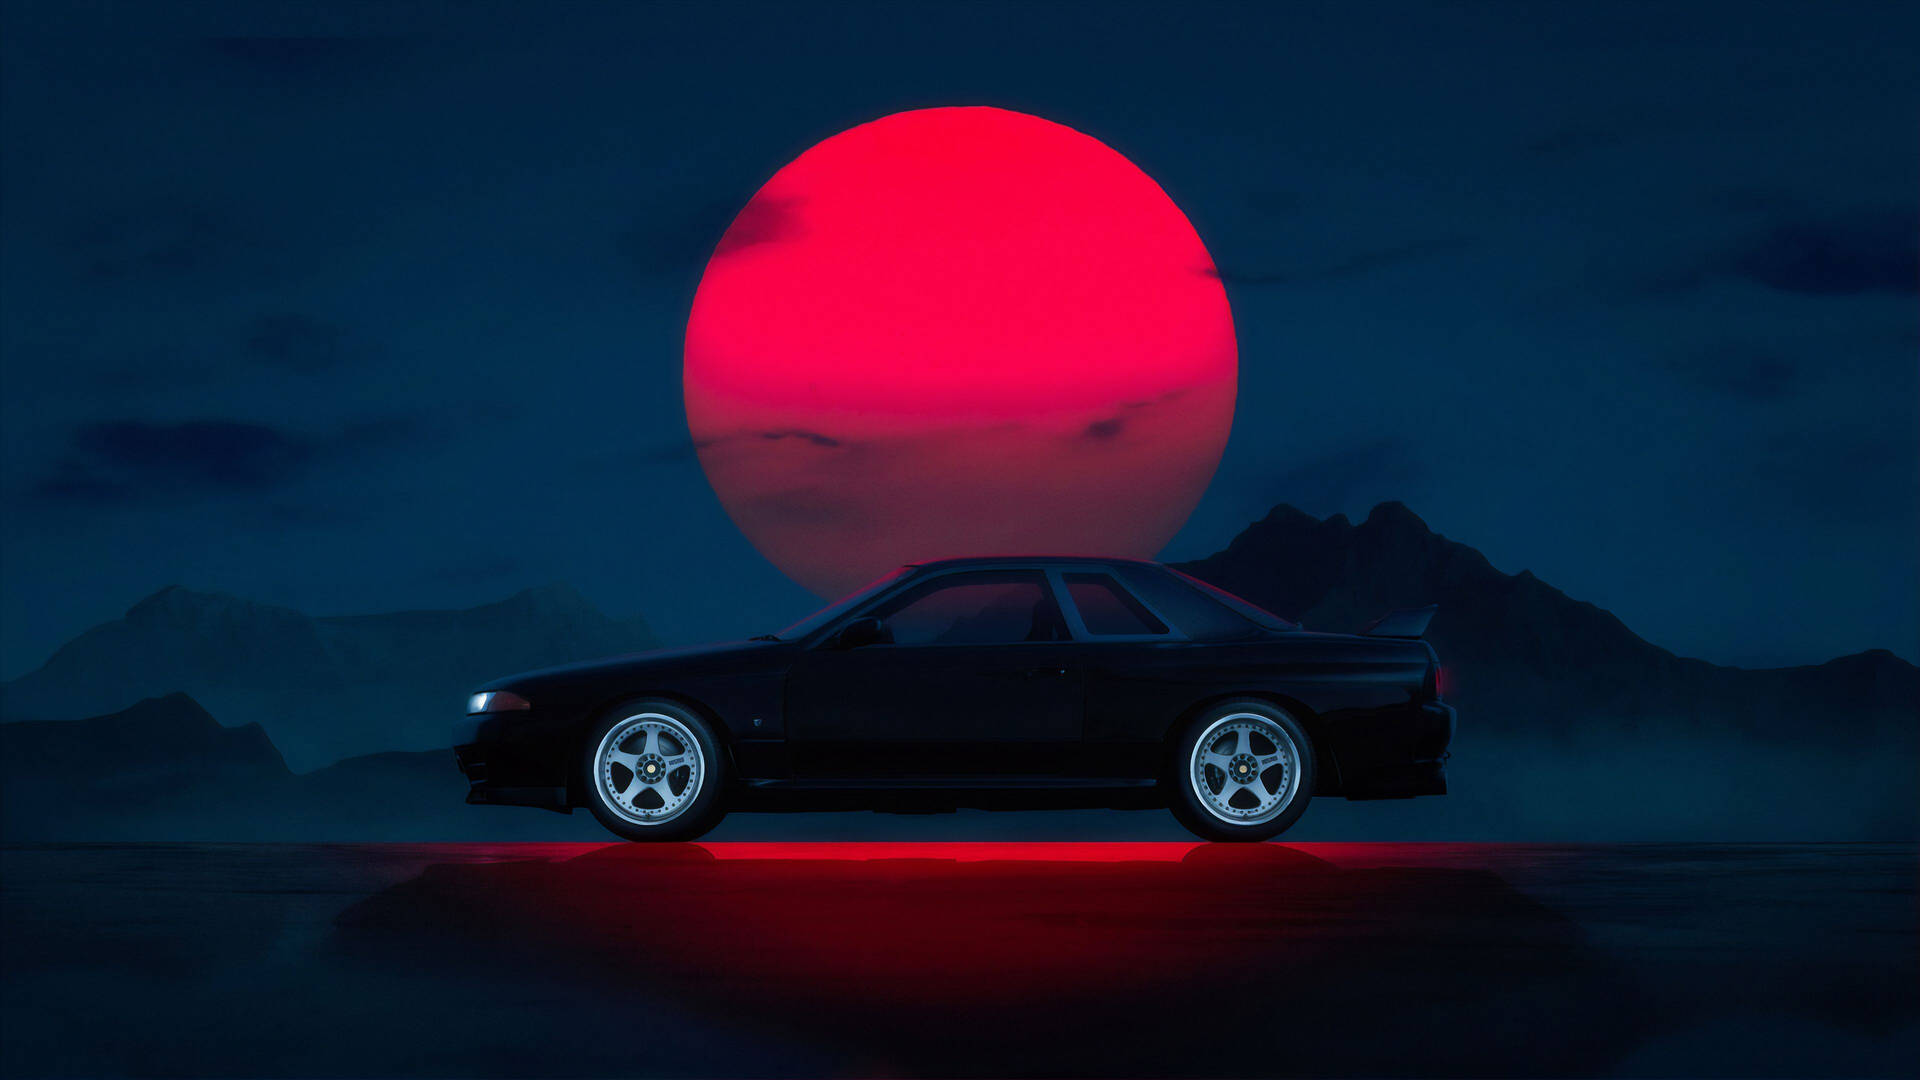 Mørk JDM-bil med røde solstråler Wallpaper